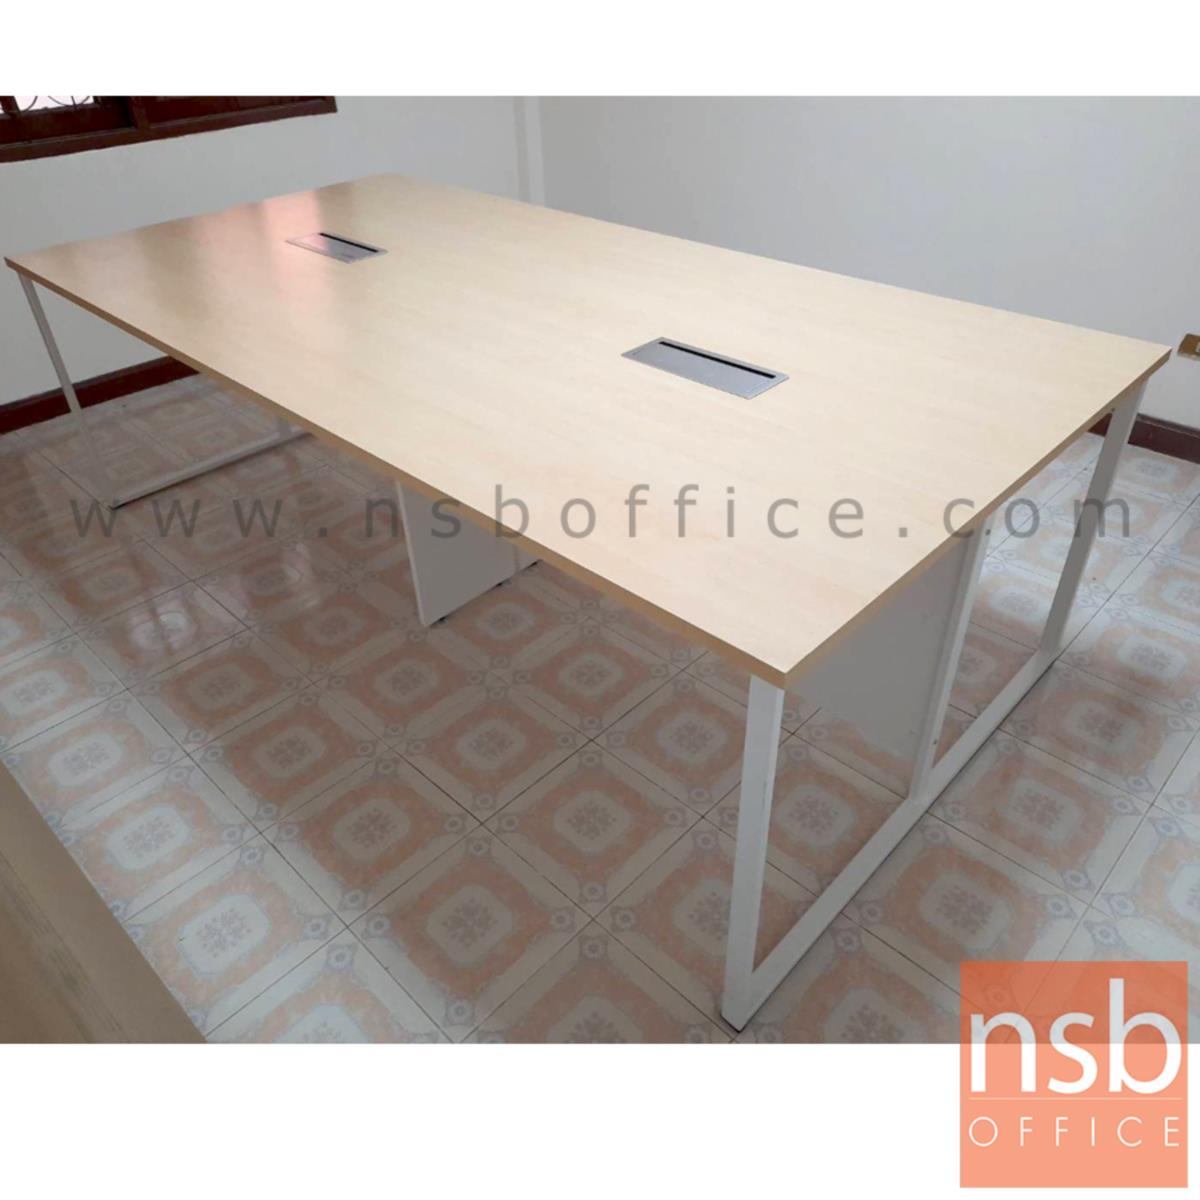 โต๊ะประชุมทรงสี่เหลี่ยม  รุ่น Gene (จีน) ขนาด 240W cm. พร้อมชุดป็อบอัพหน้าโต๊ะ